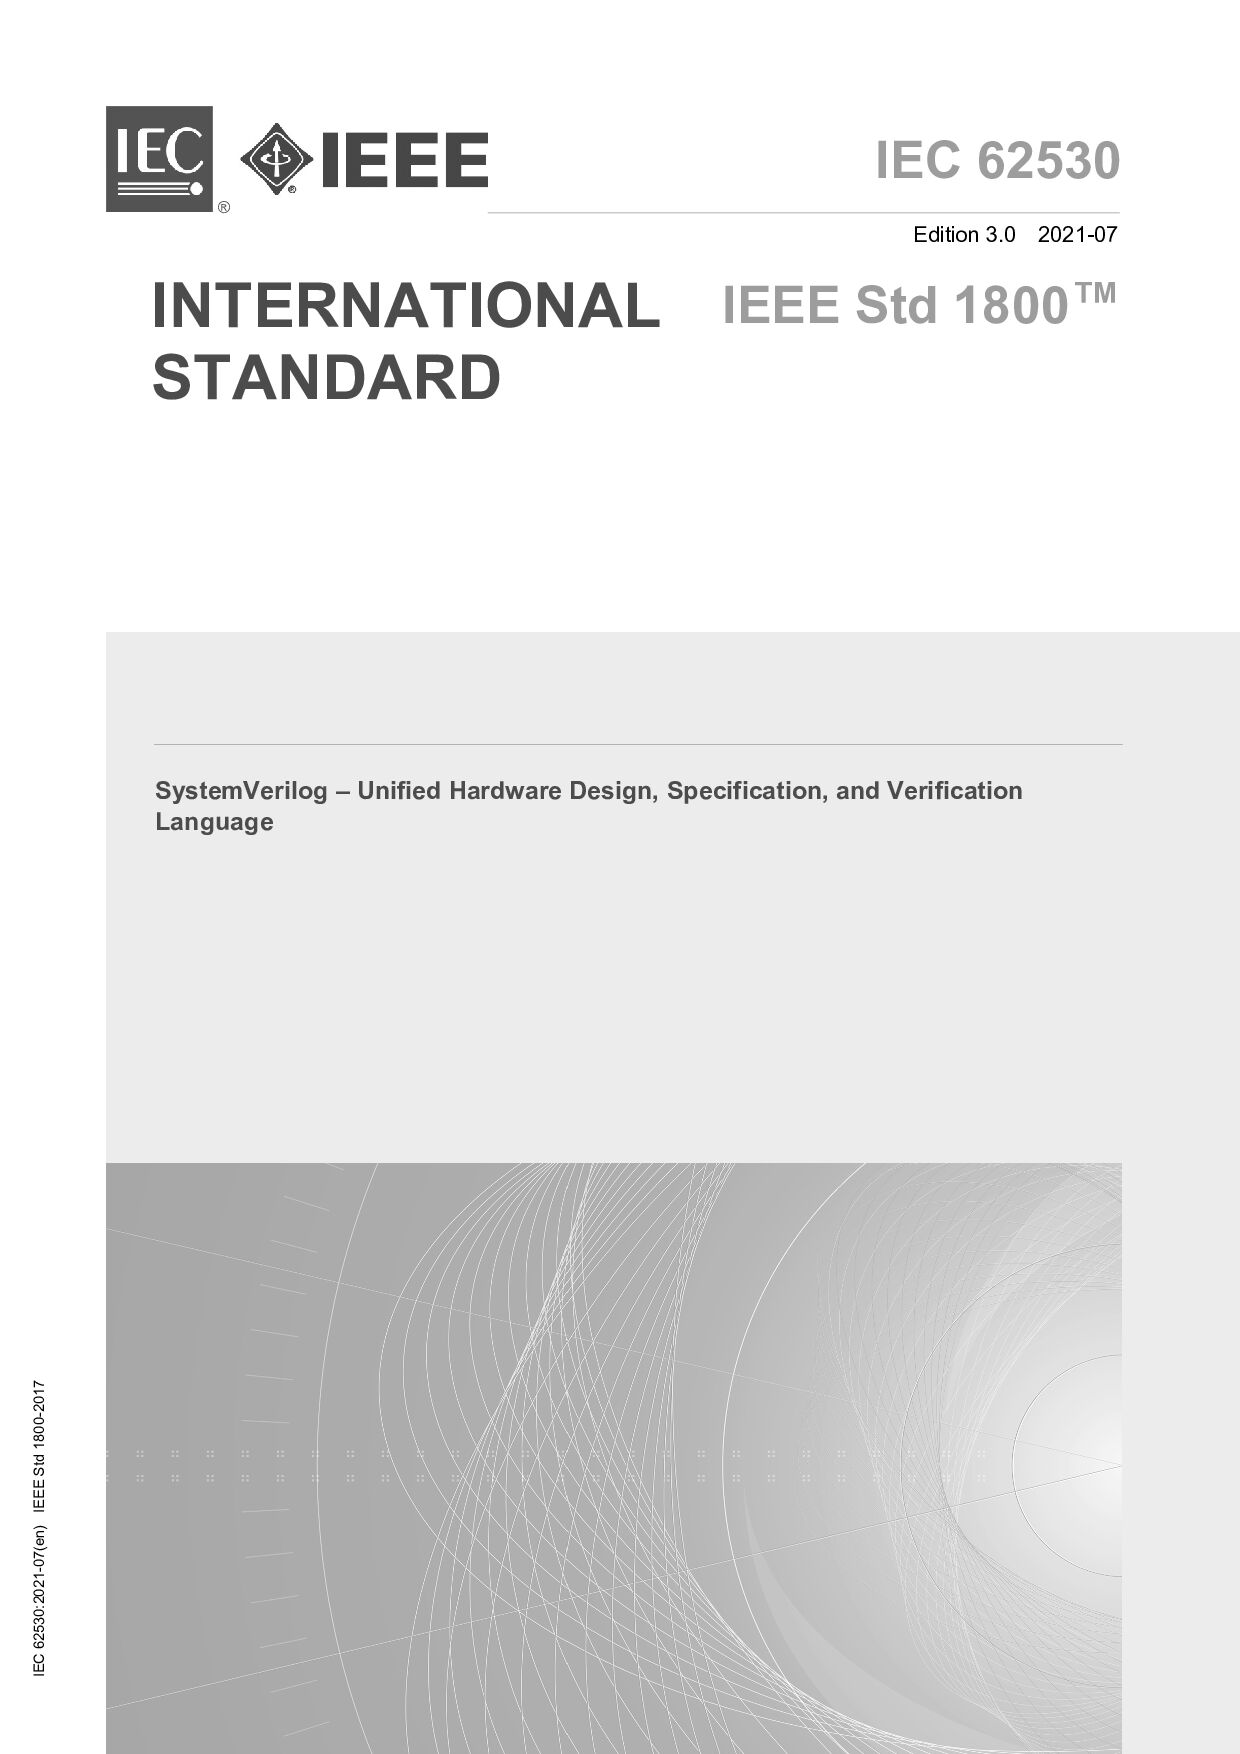 IEC 62530:2021